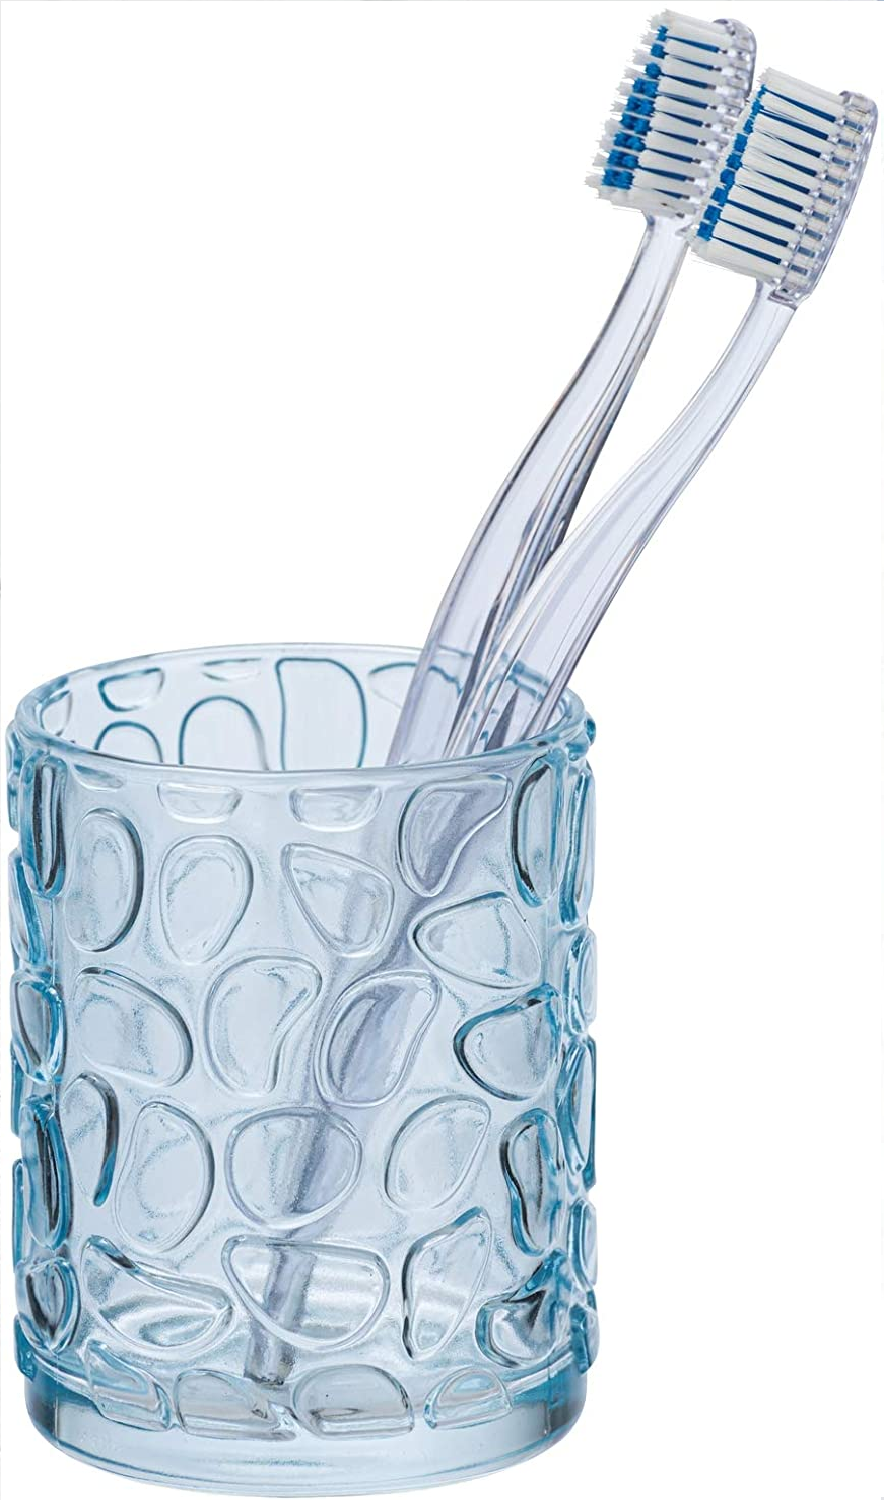 Zahnputzbecher Vetro Blau rund Echtglas - Zahnbürstenhalter für Zahnbürste und Zahnpasta, Glas, 7.5 x 10 x 7.5 cm, Blau